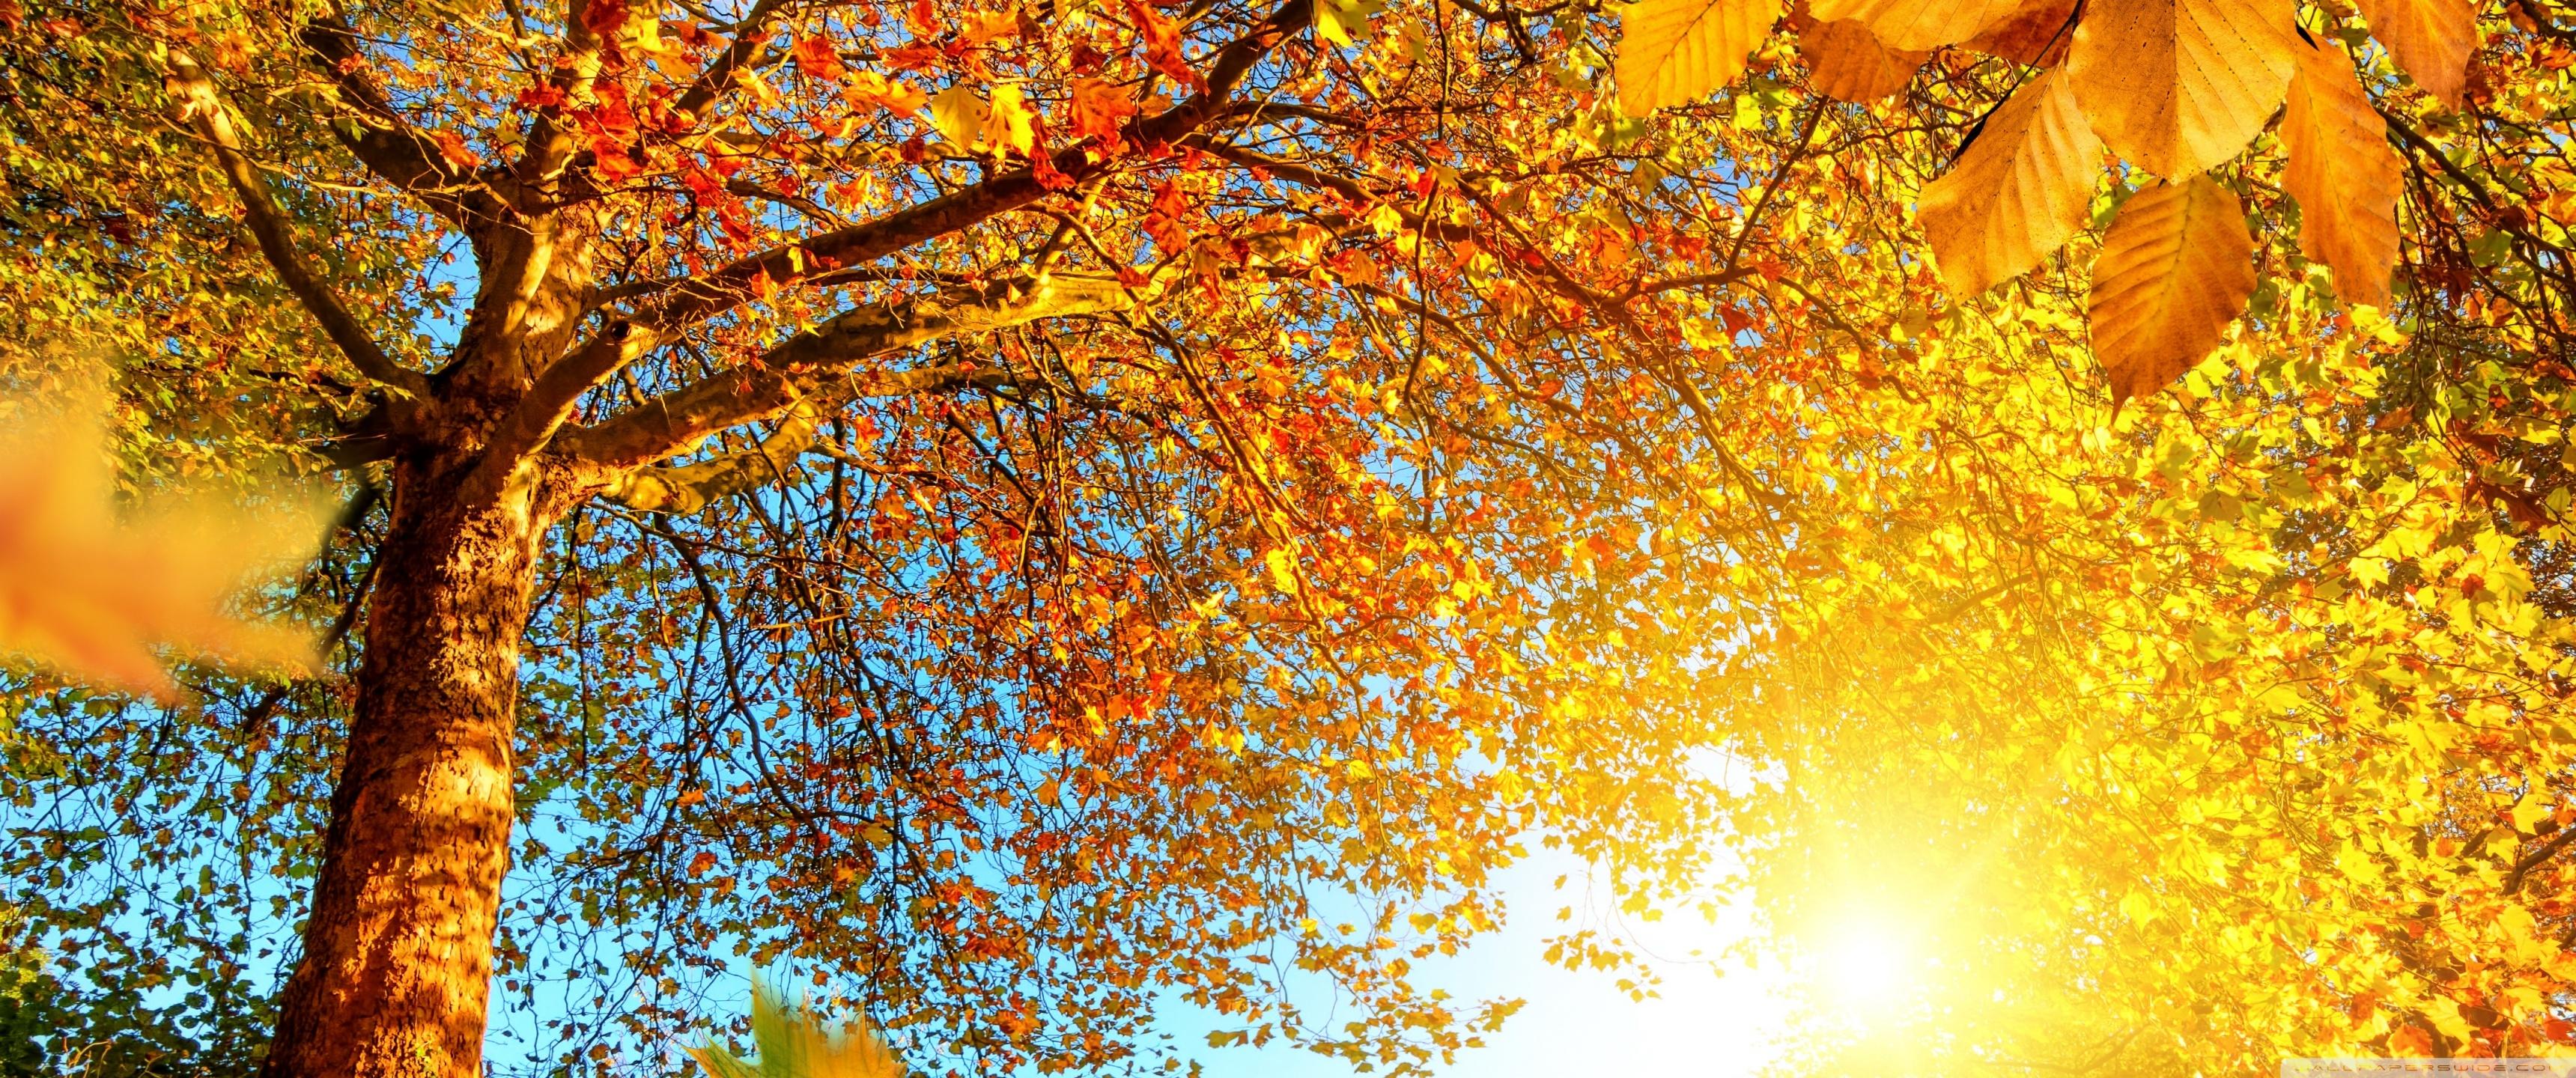 Осень природа солнце радость листья